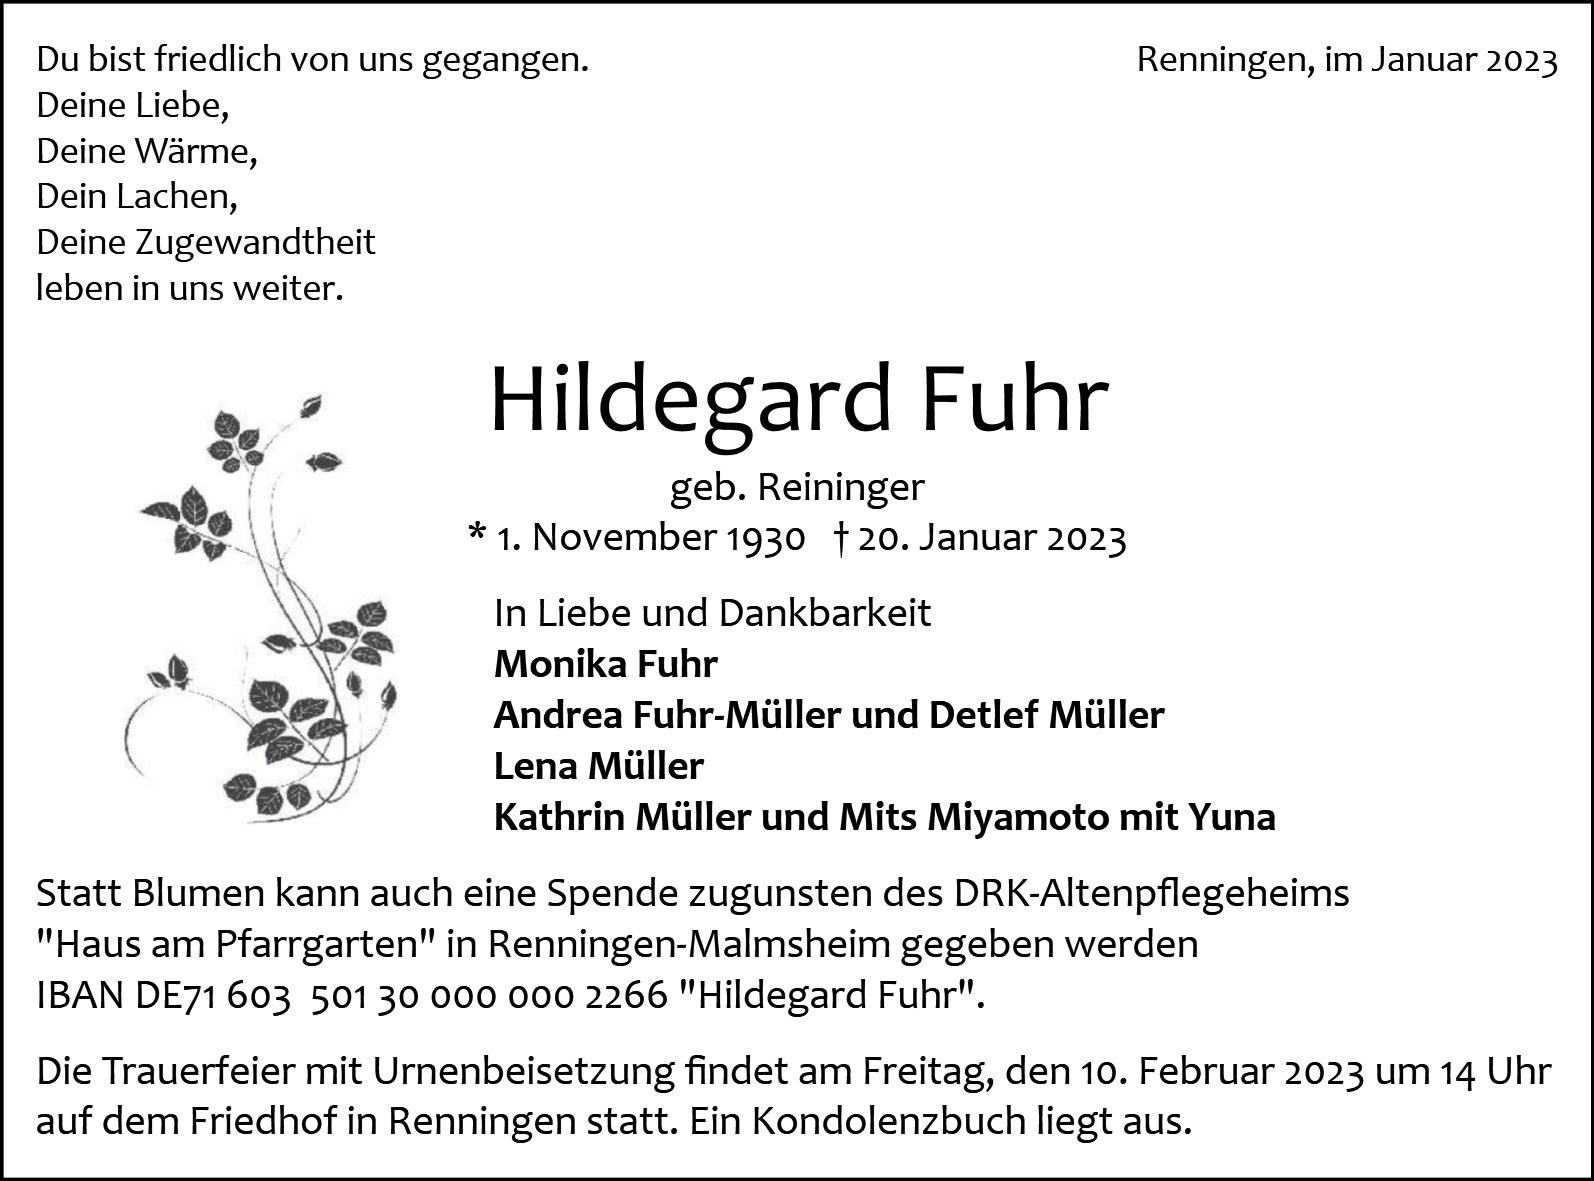 Hildegard Fuhr